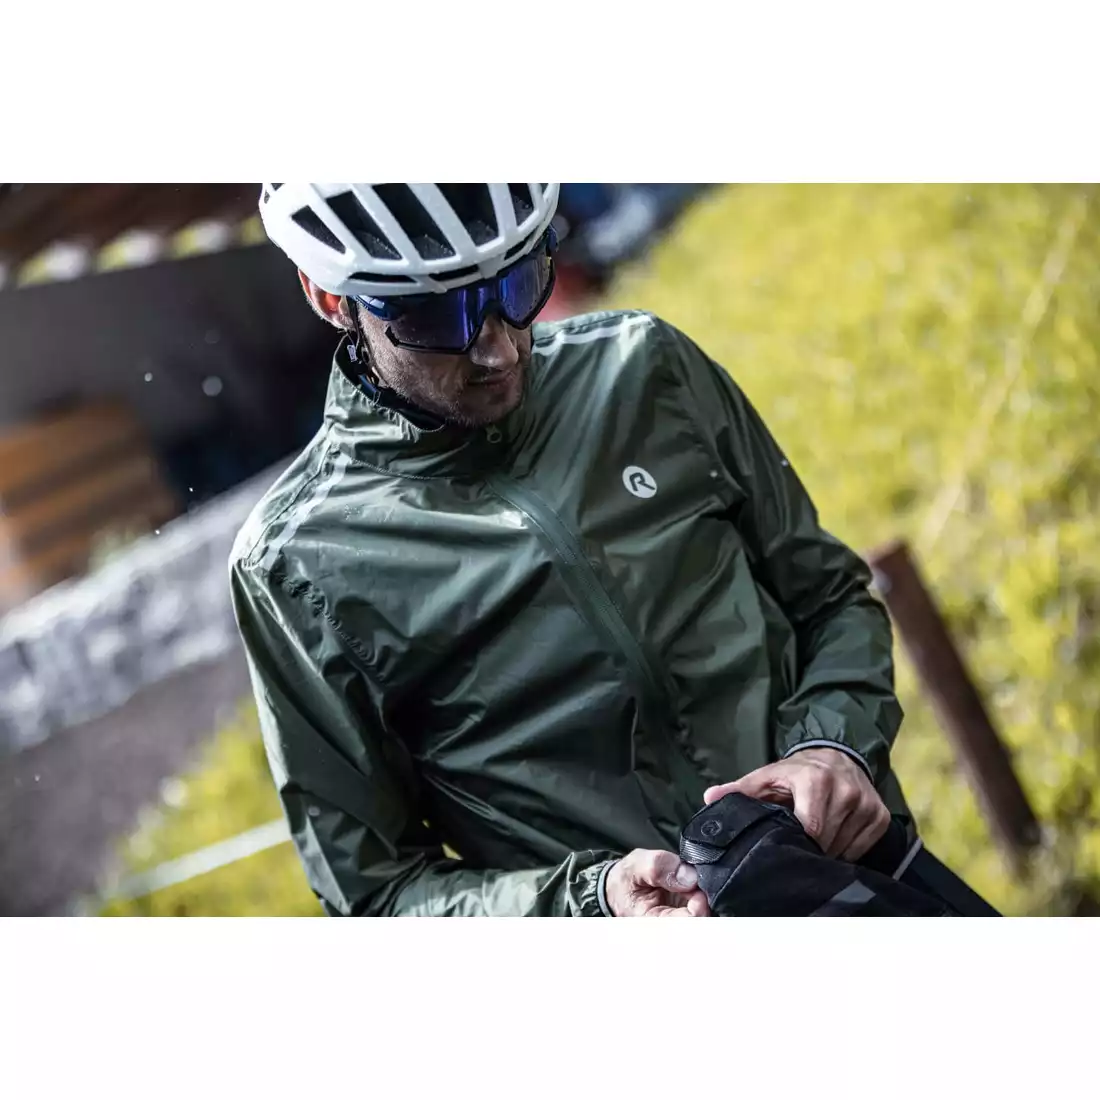 Rogelli ESSENTIAL jachetă de ploaie pentru ciclism pentru bărbați, kaki